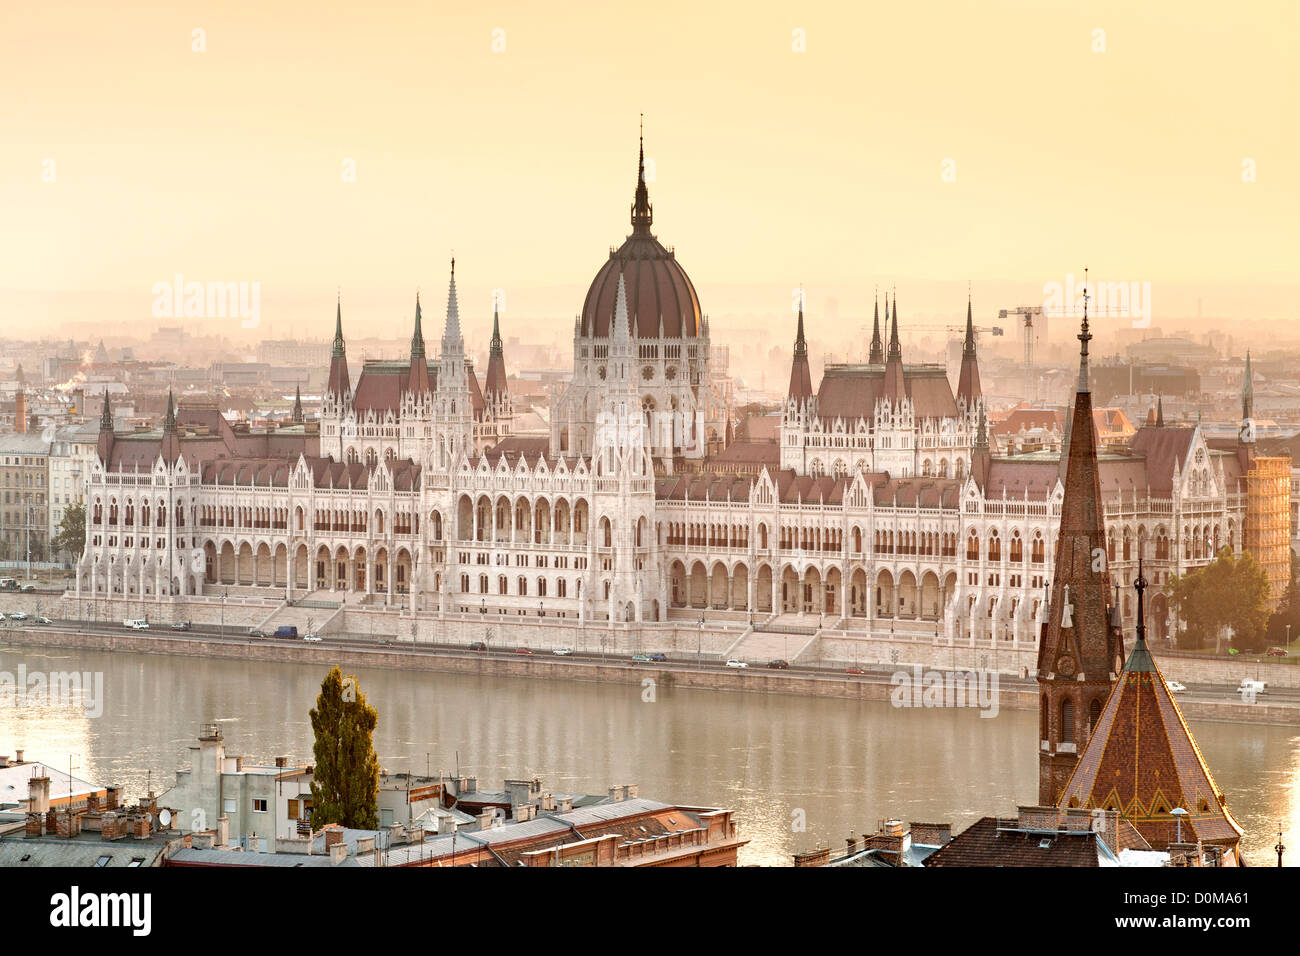 Alba vista del Parlamento ungherese edificio sulle rive del Danubio a Budapest, capitale di Ungheria. Foto Stock